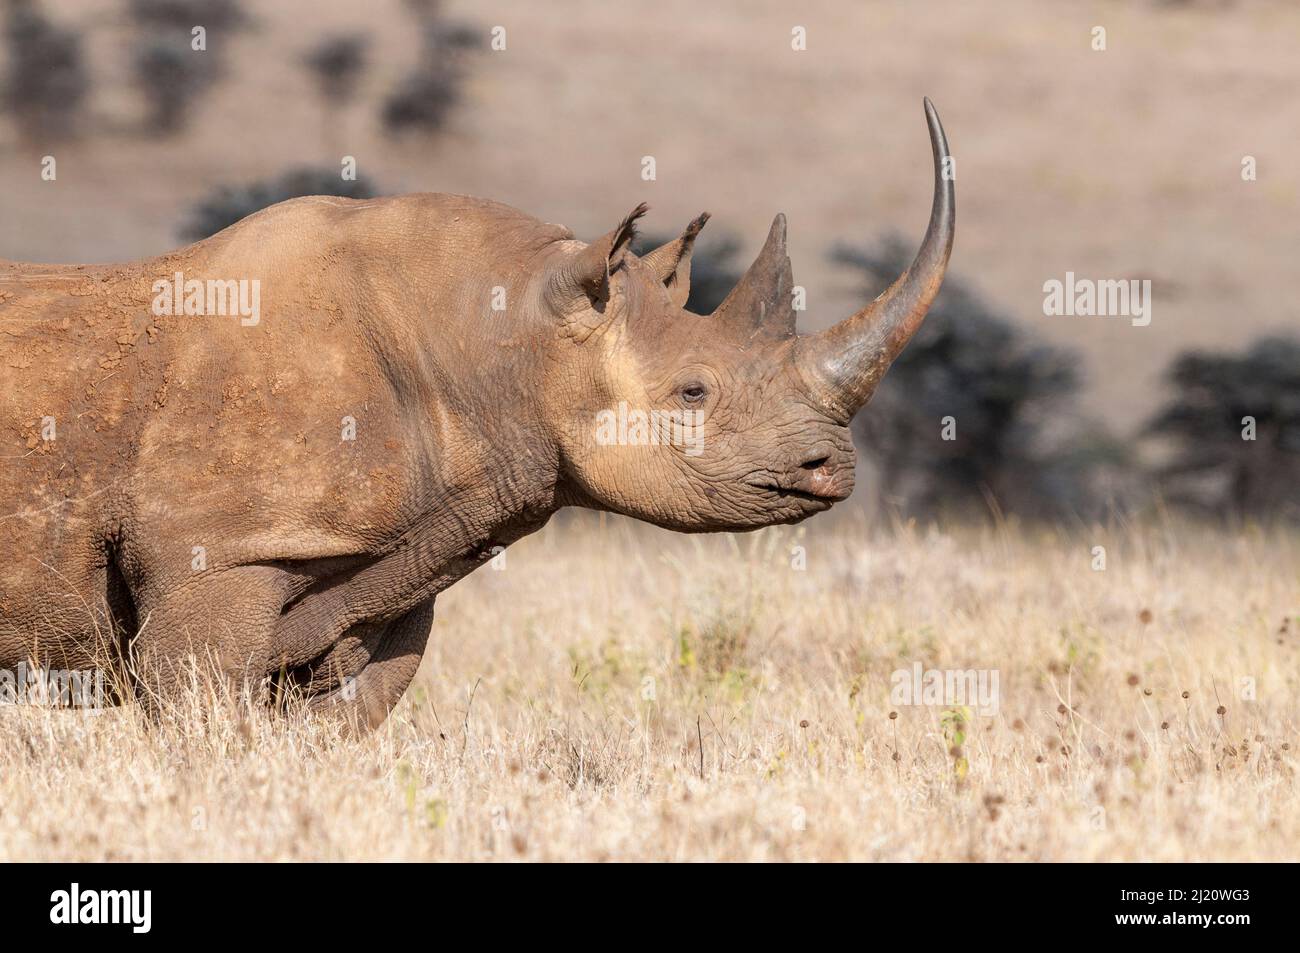 Rhinocéros noir (Diceros bicornis) à très longue corne, Lewa Wildlife Conservancy, Laikipia, Kenya. Octobre. Banque D'Images